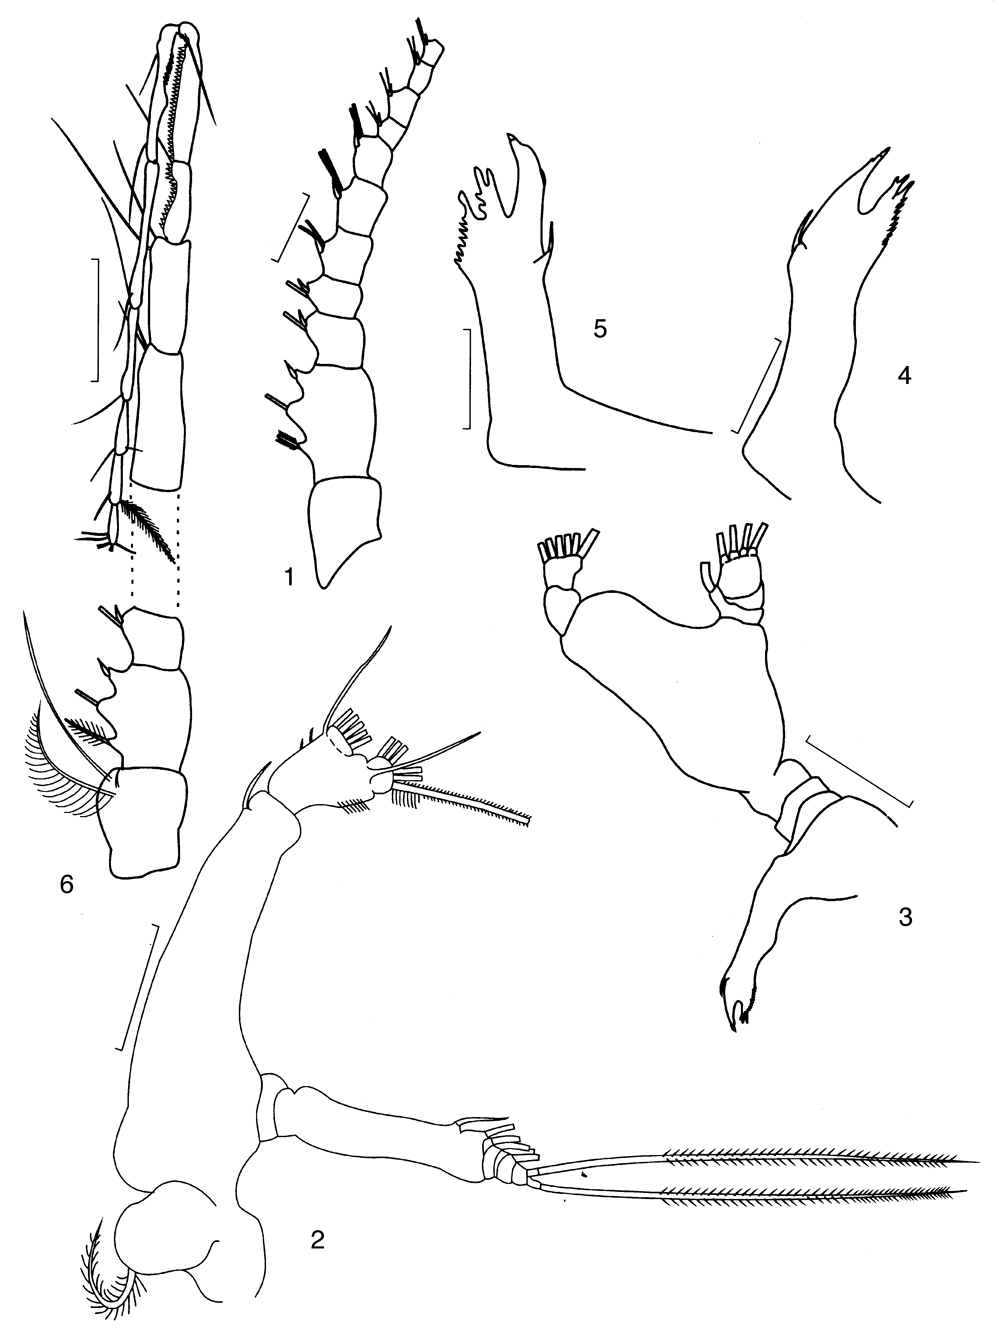 Espèce Candacia columbiae - Planche 5 de figures morphologiques